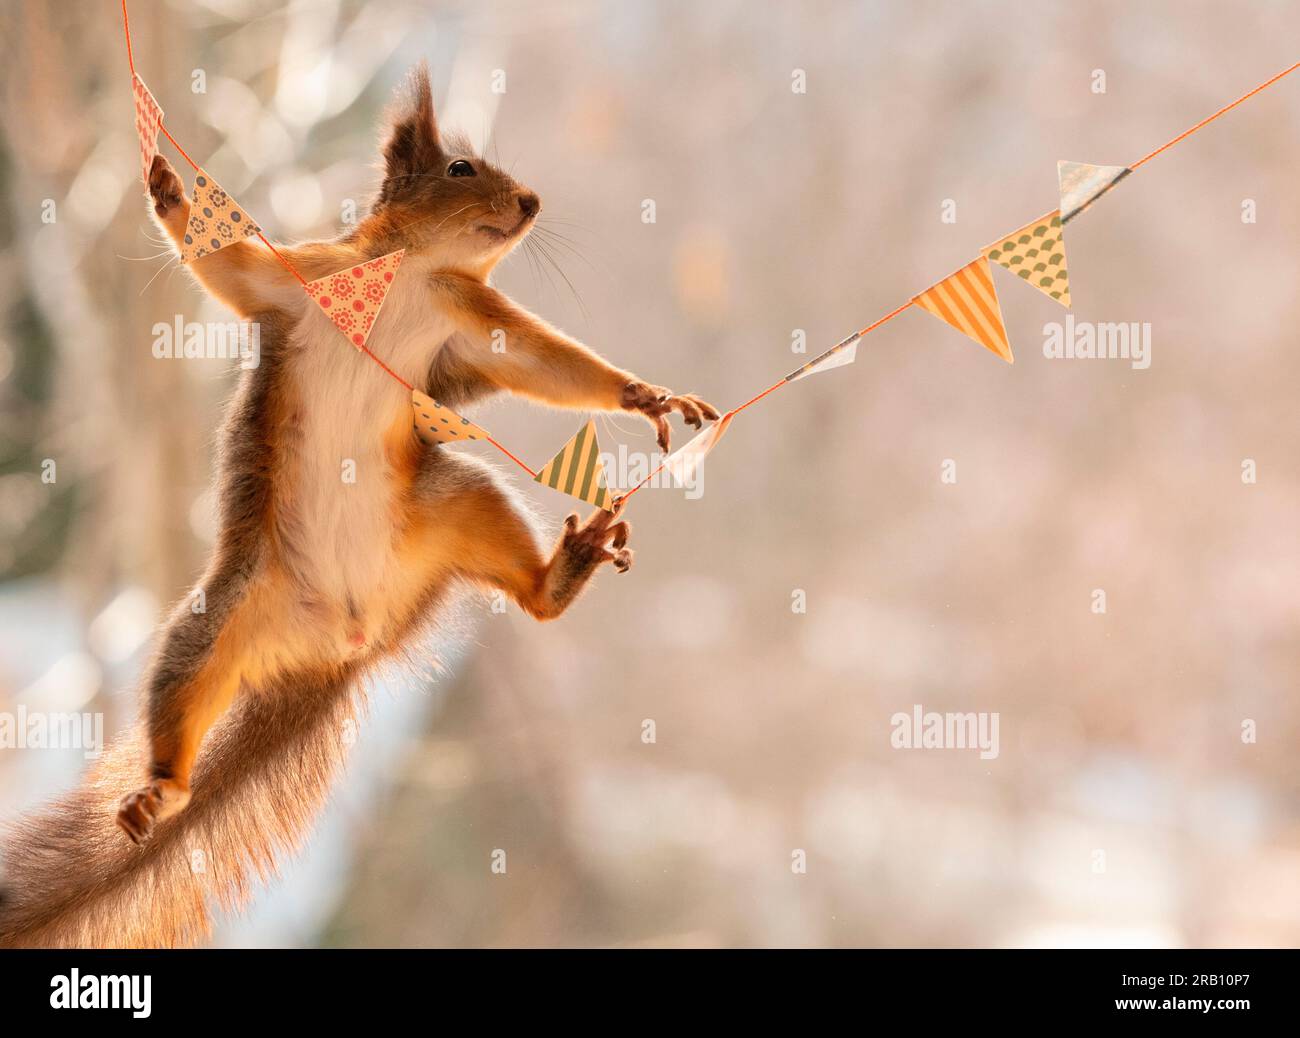 Rotes Eichhörnchen auf Girlande balancieren Stockfoto